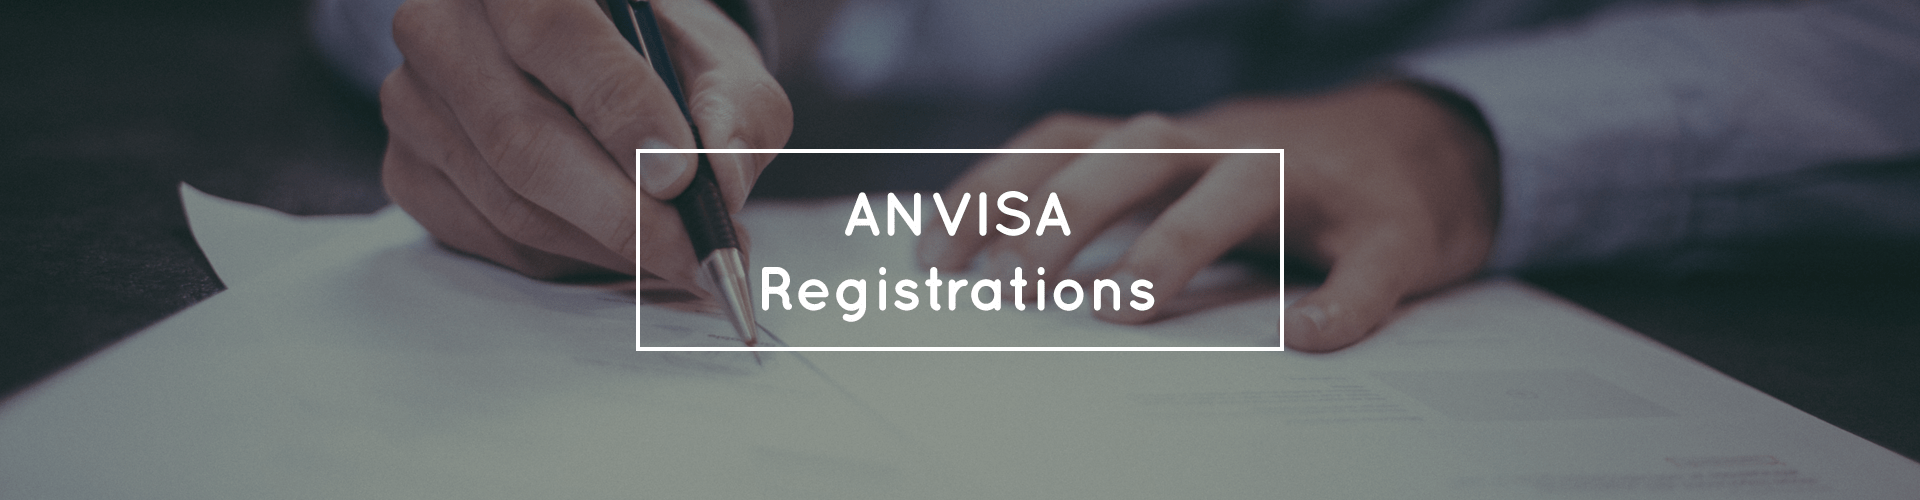 ANVISA Registration/Record